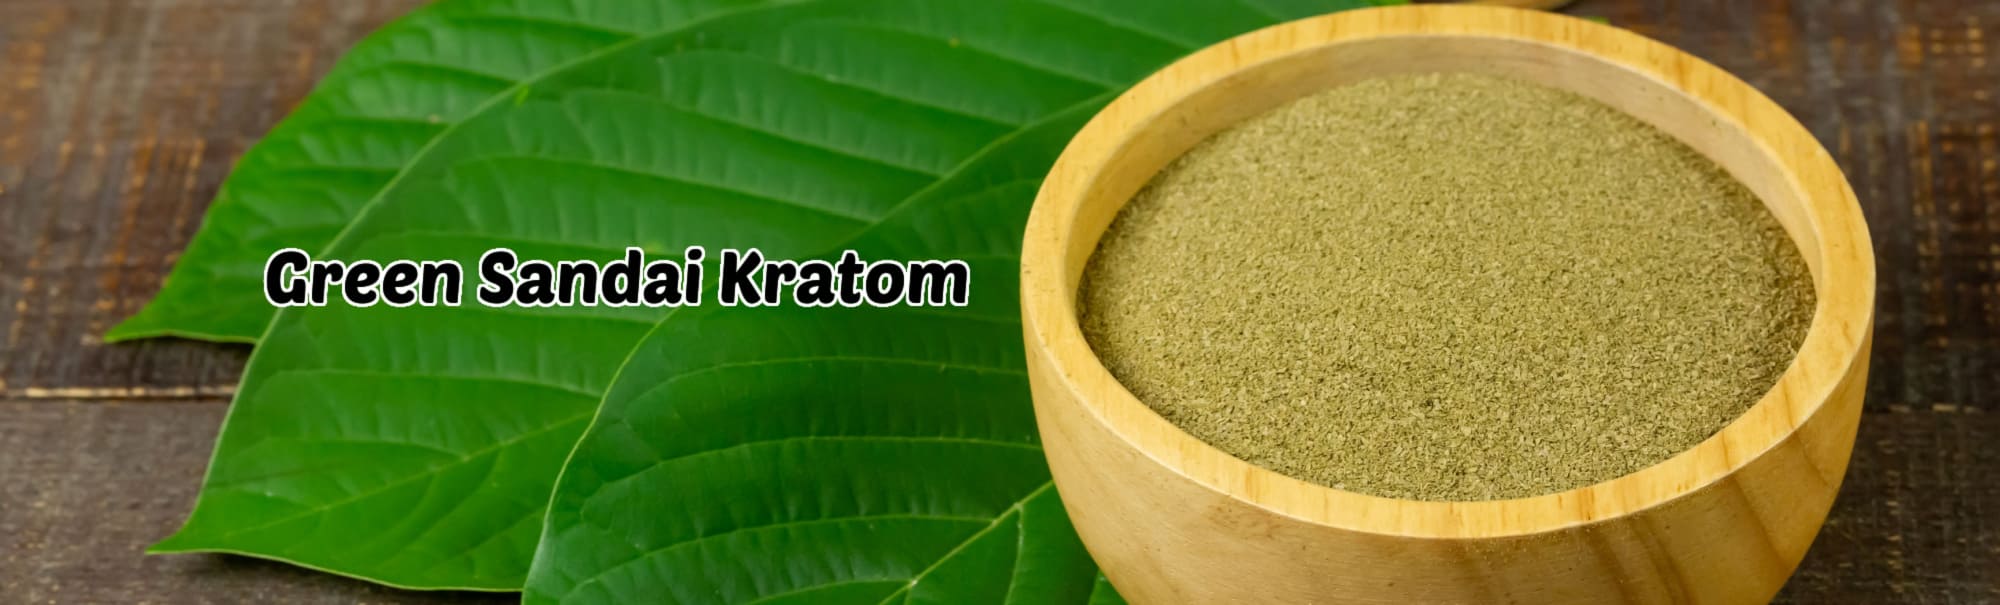 image of green sundai kratom